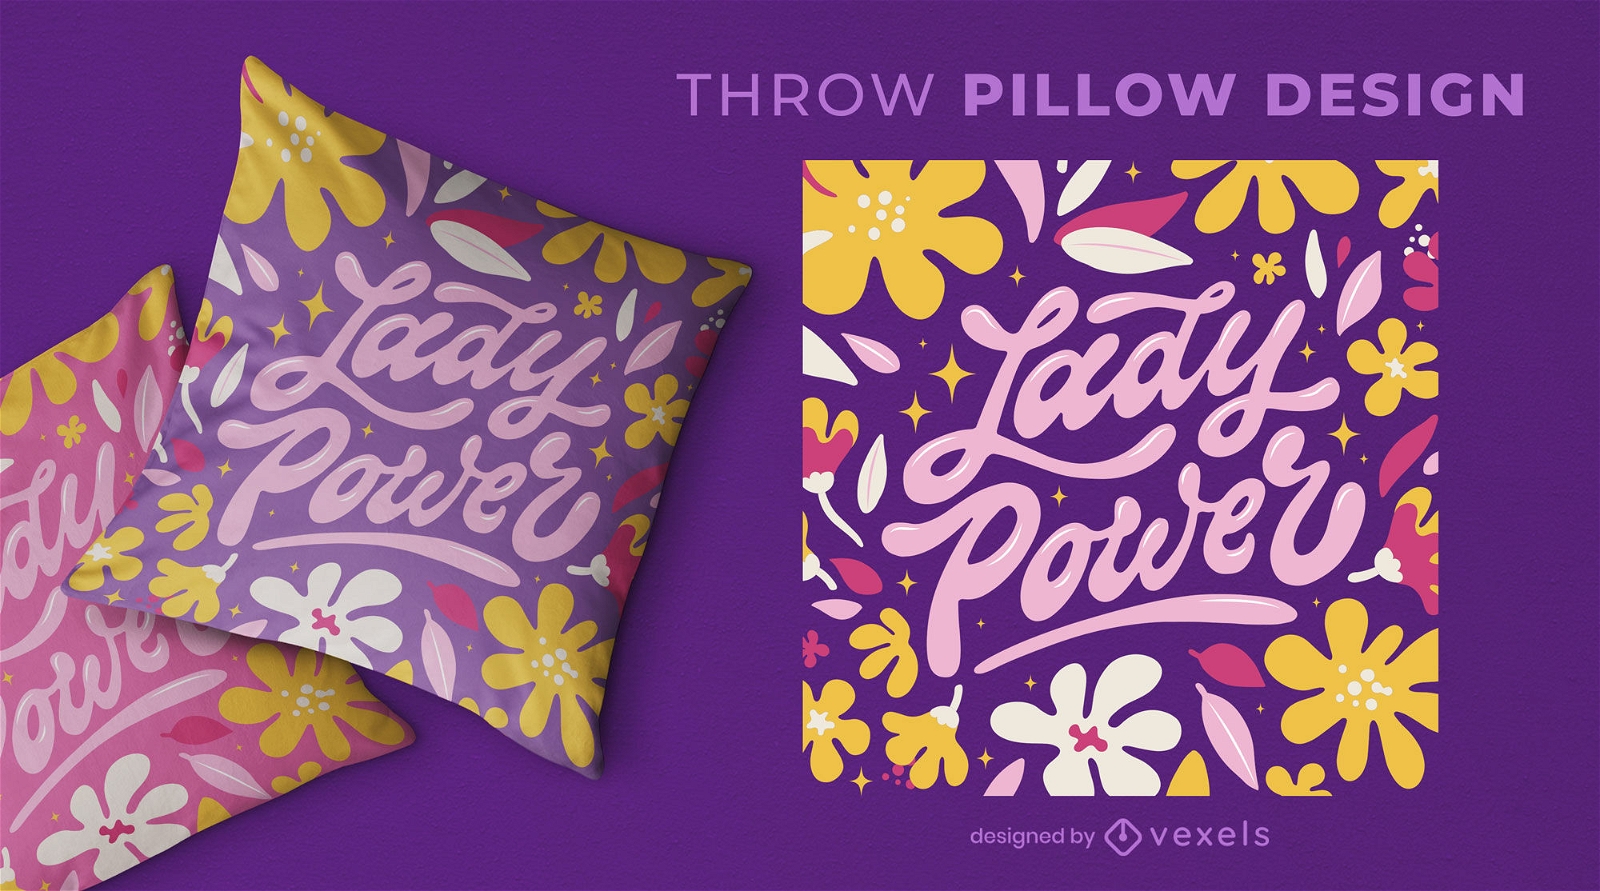 Design de almofadas com estampa floral Lady power